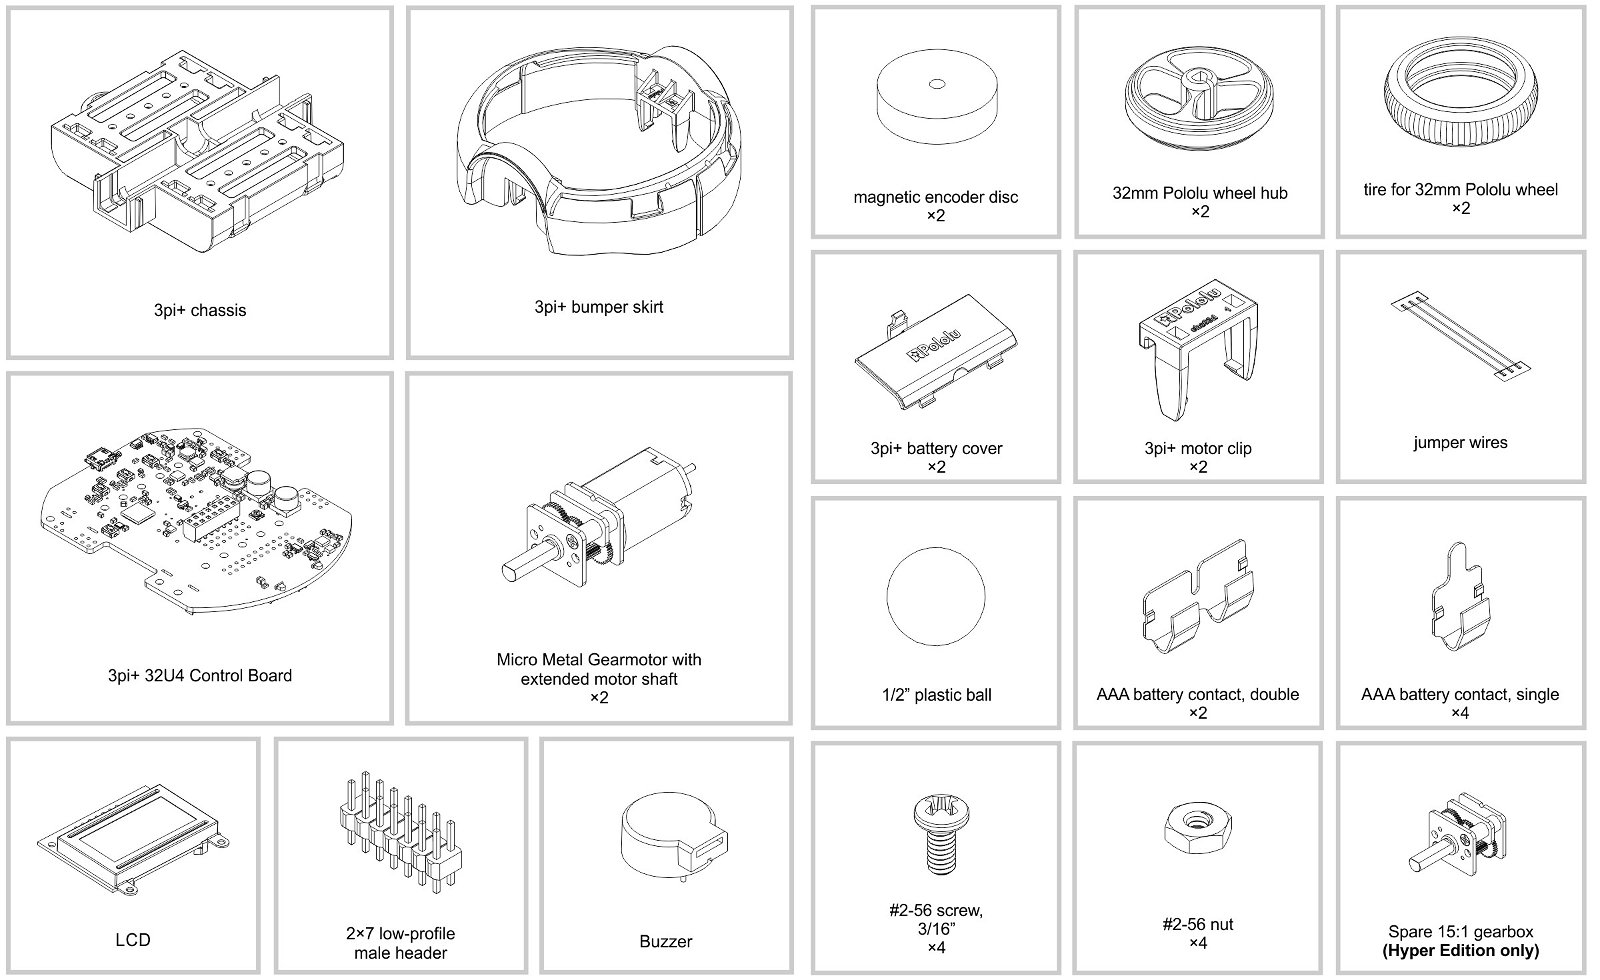 Inhalt des Roboter-Kits 3pi + Standard Edition